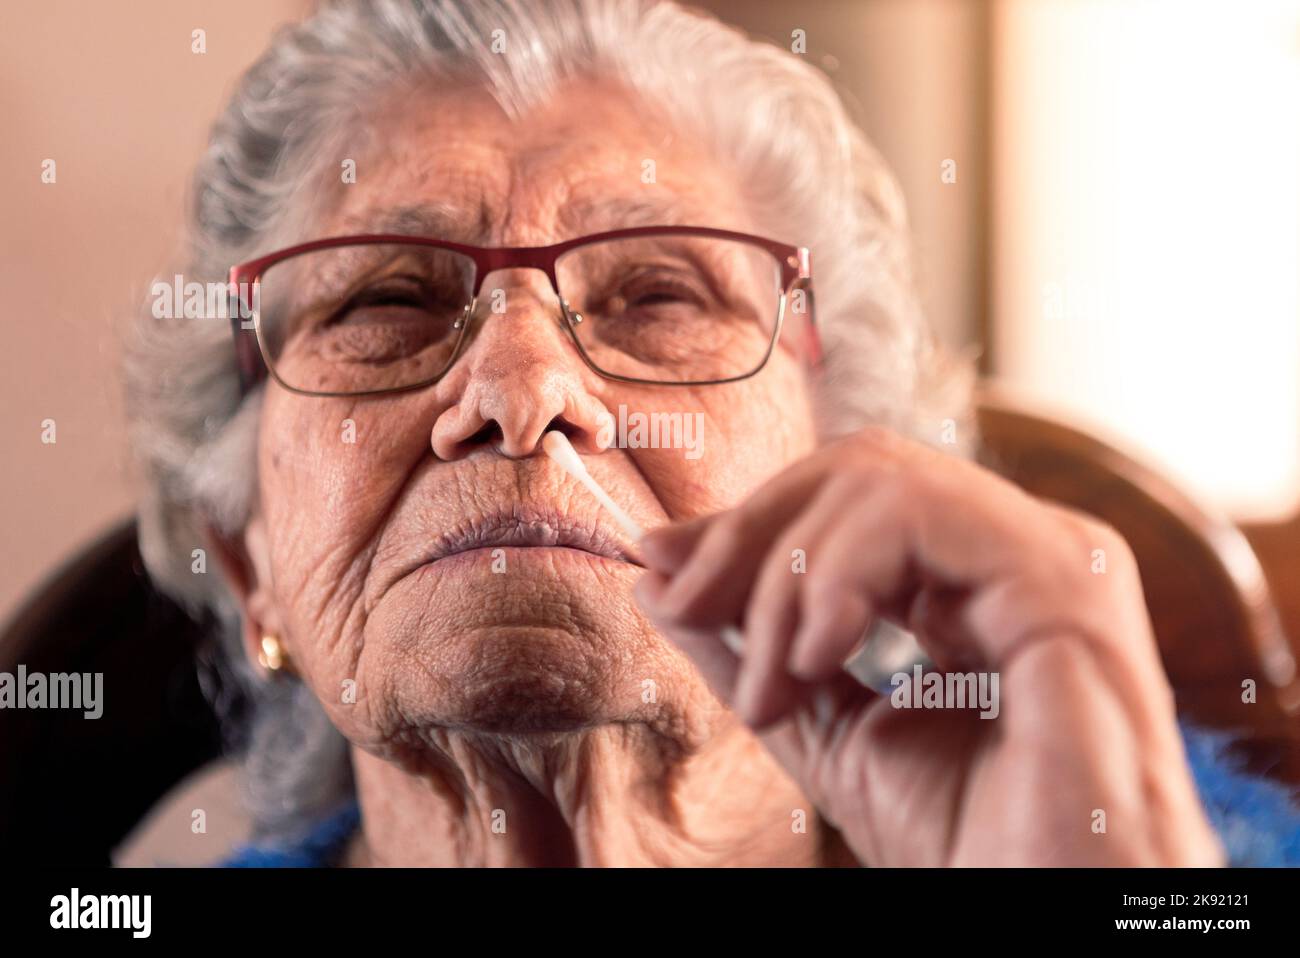 Ritratto di vecchia donna che prende un auto swabbing home test per Covid19 con antigene kit. Nonna caucasica introdurre il bastone nasale per controllare l'infezione Foto Stock